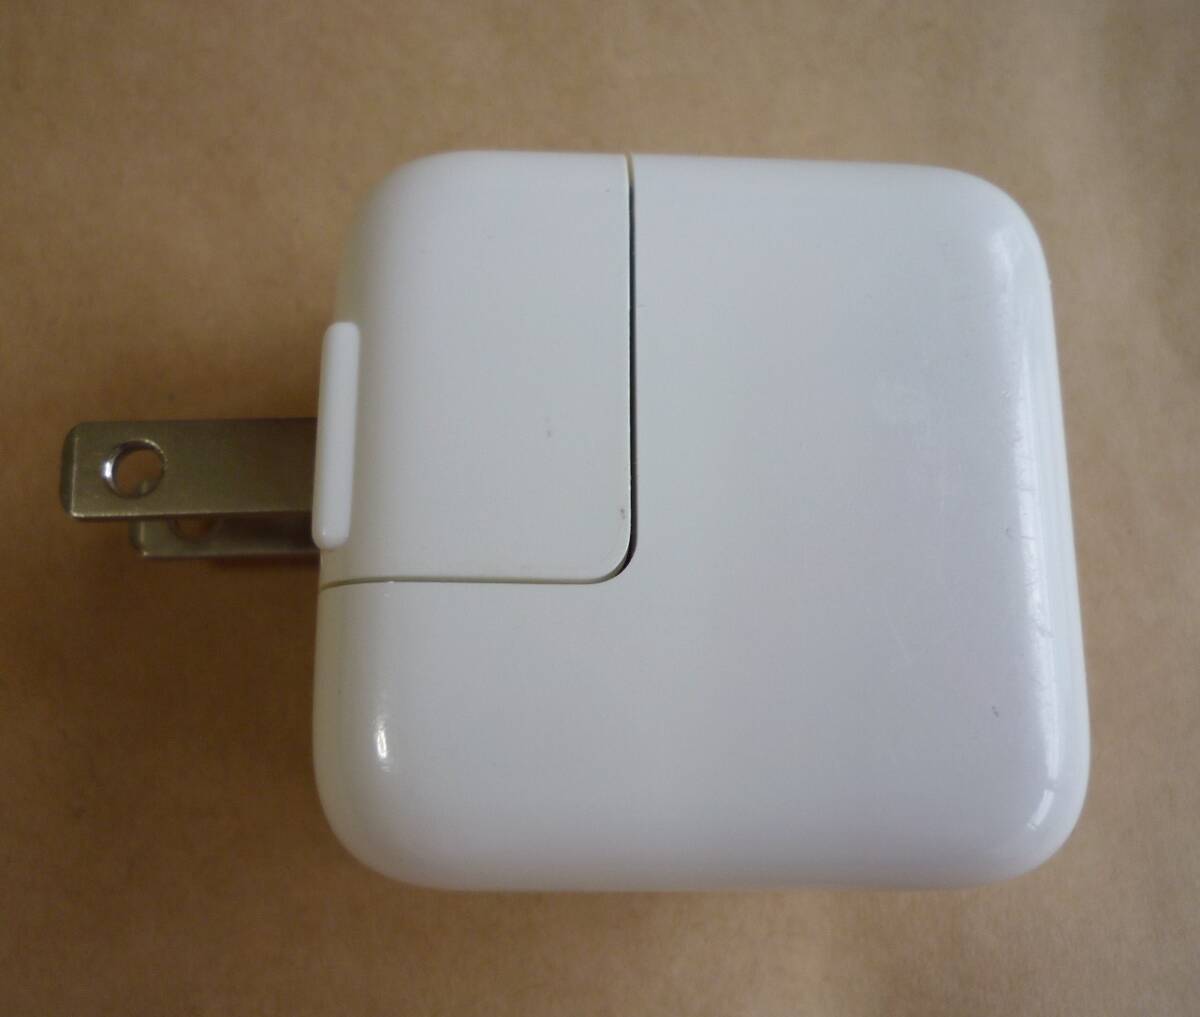 純正 Apple アップル USB充電器 12W USB Power Adapter ホワイト 白 A1401 5.2V 2.4A ACアダプタ 電源アダプタ　_画像4